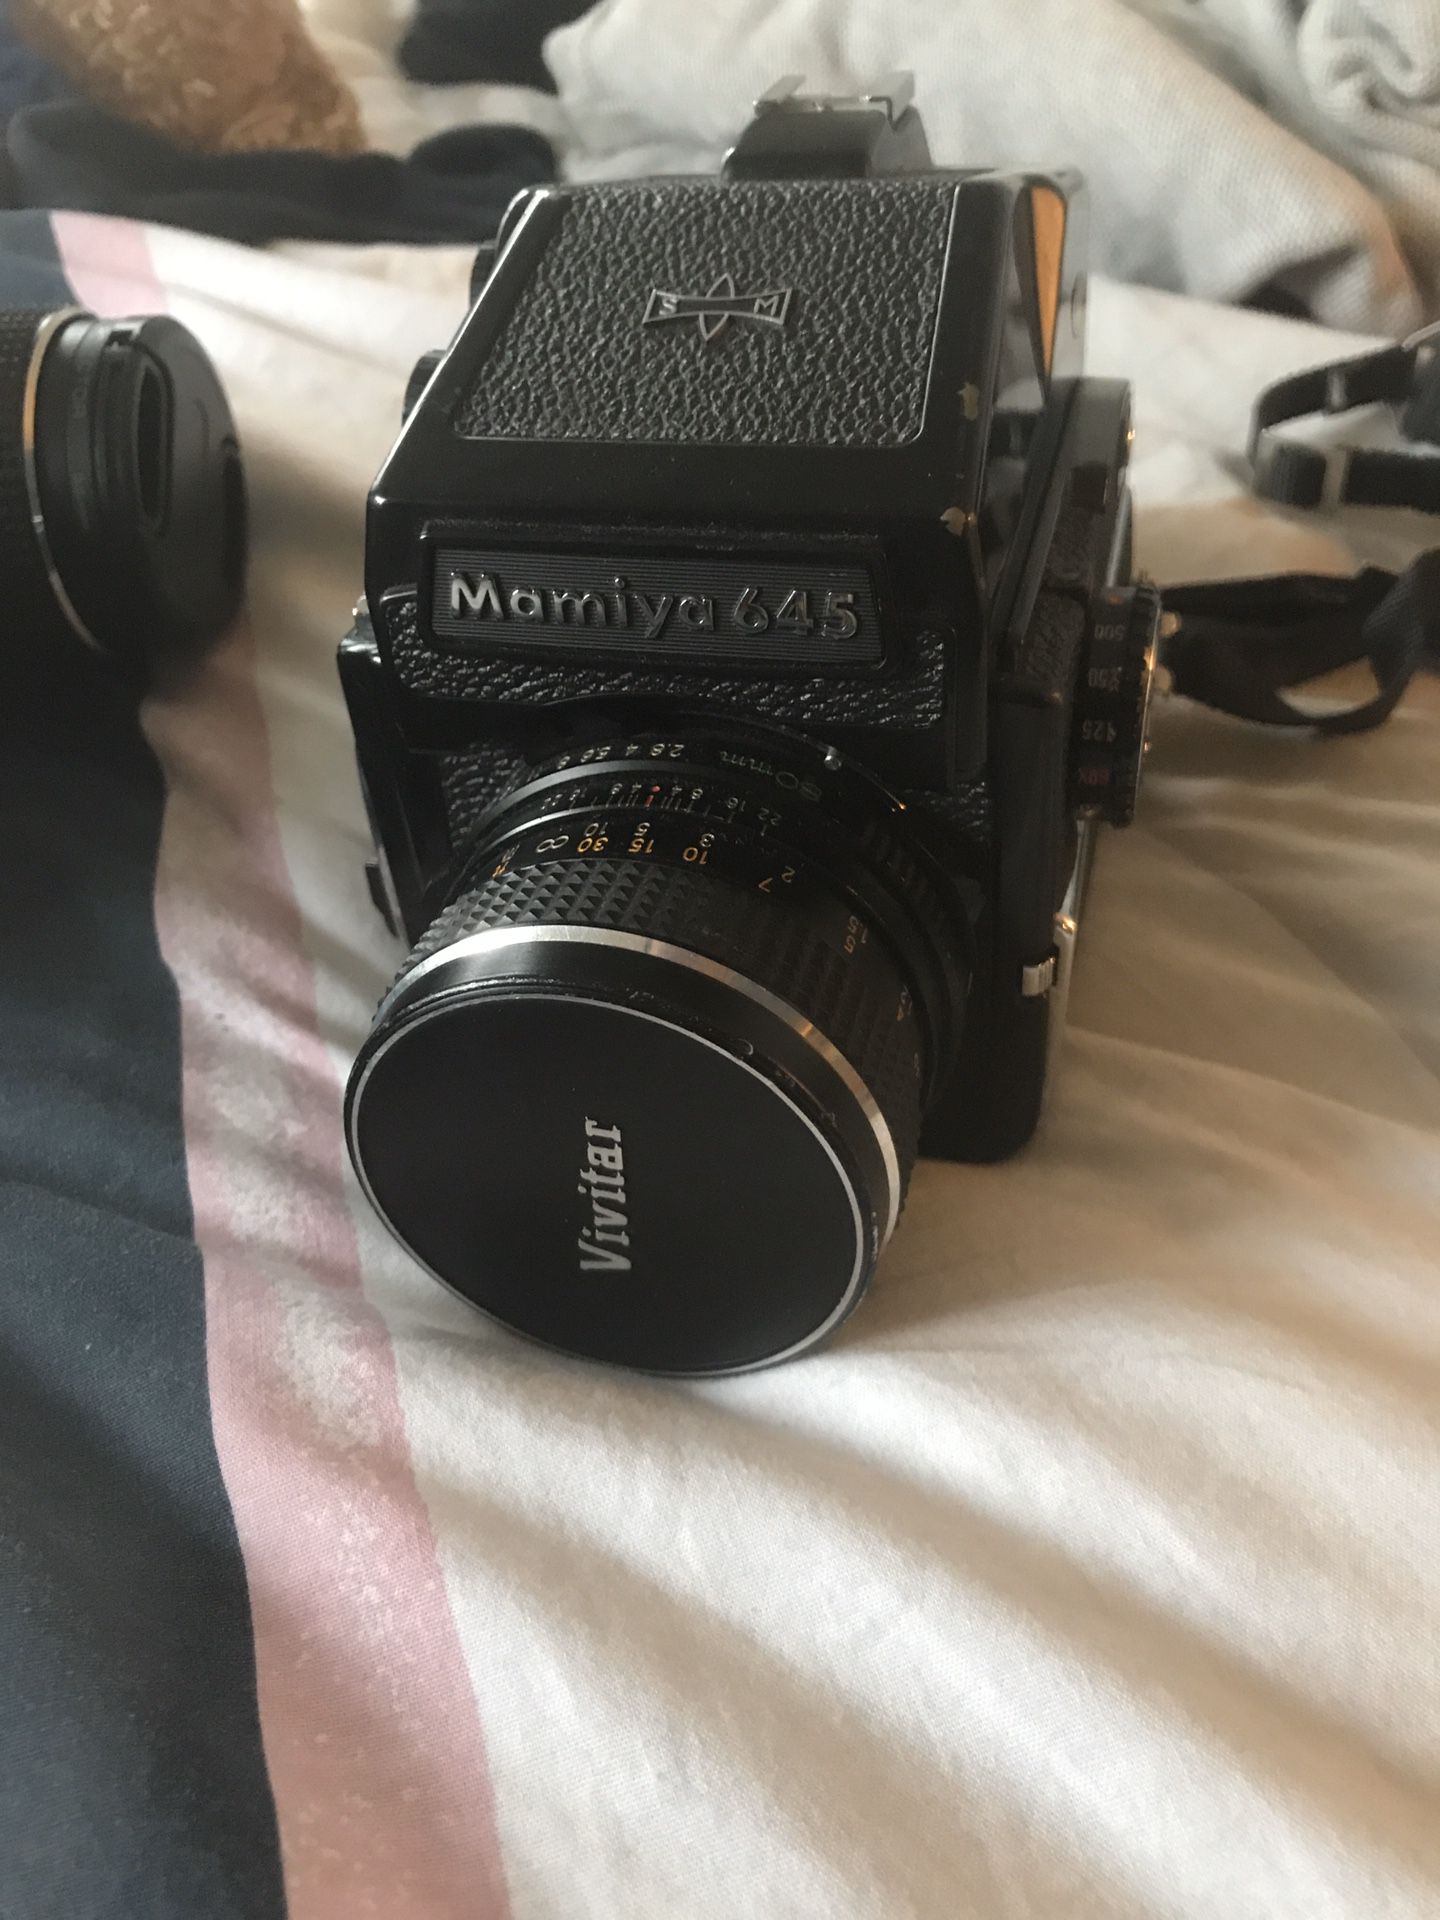 Mamiya m645 medium format 120 camera with 80mm lens